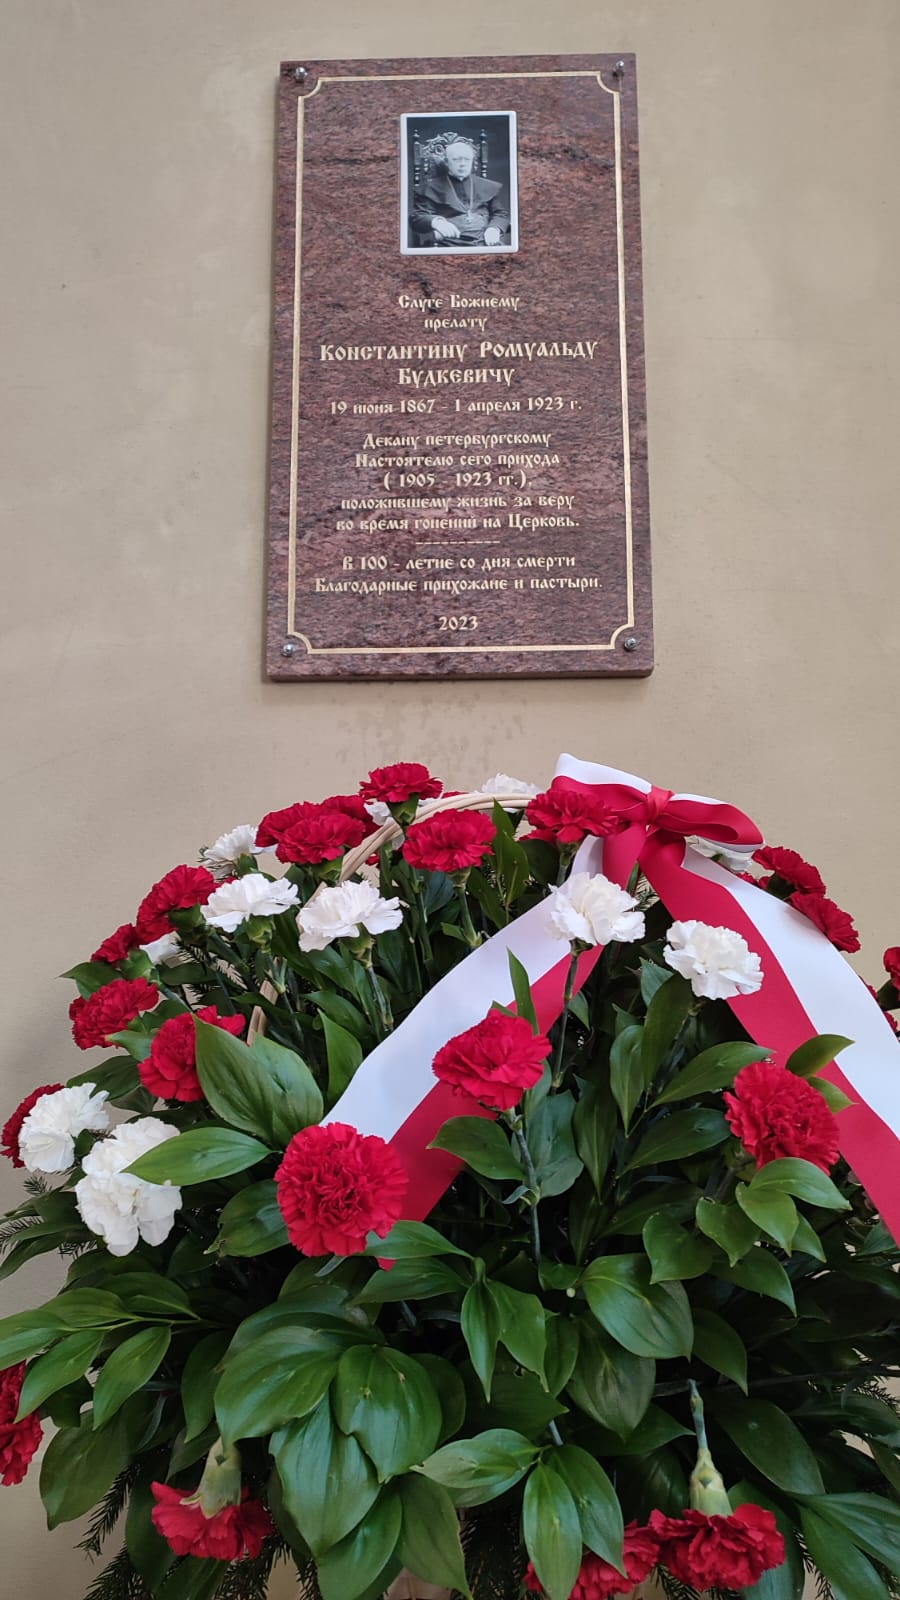 Ściana budynku. Na niej zawieszona marmurowa tablica pamiątkowa. Poniżej duży bukiet kwiatów z wstęgą w barwach polskiej flagi. 